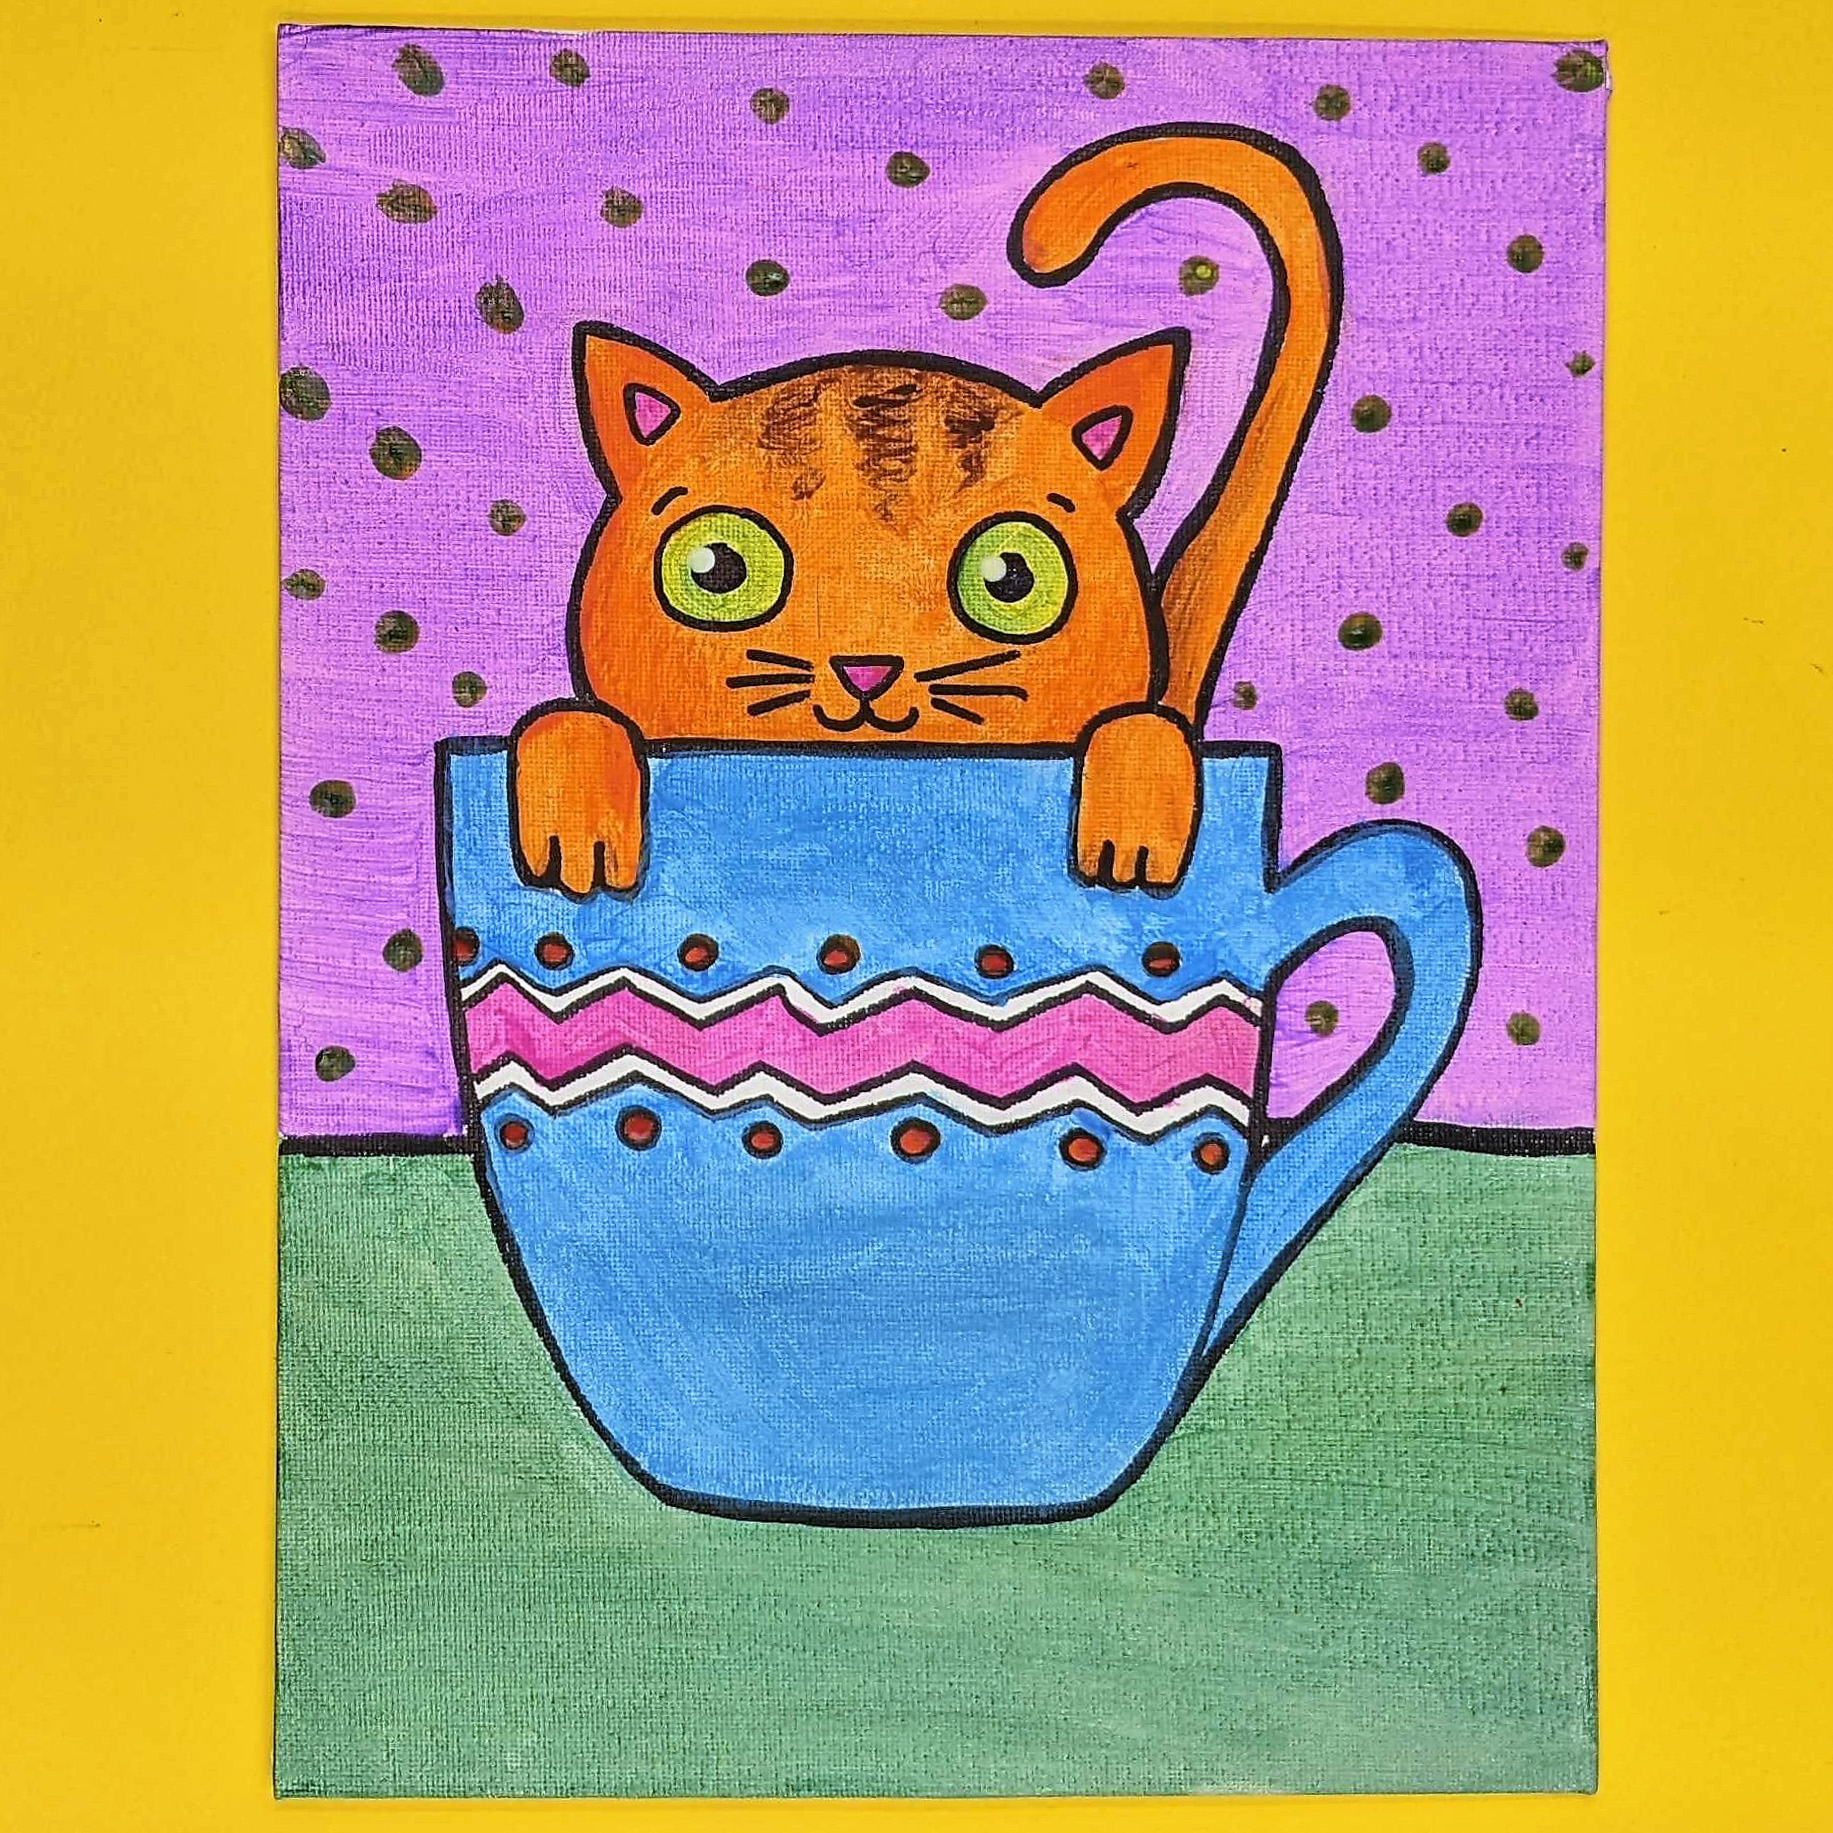 Kidcreate Studio, Teacup Kitten Art Project